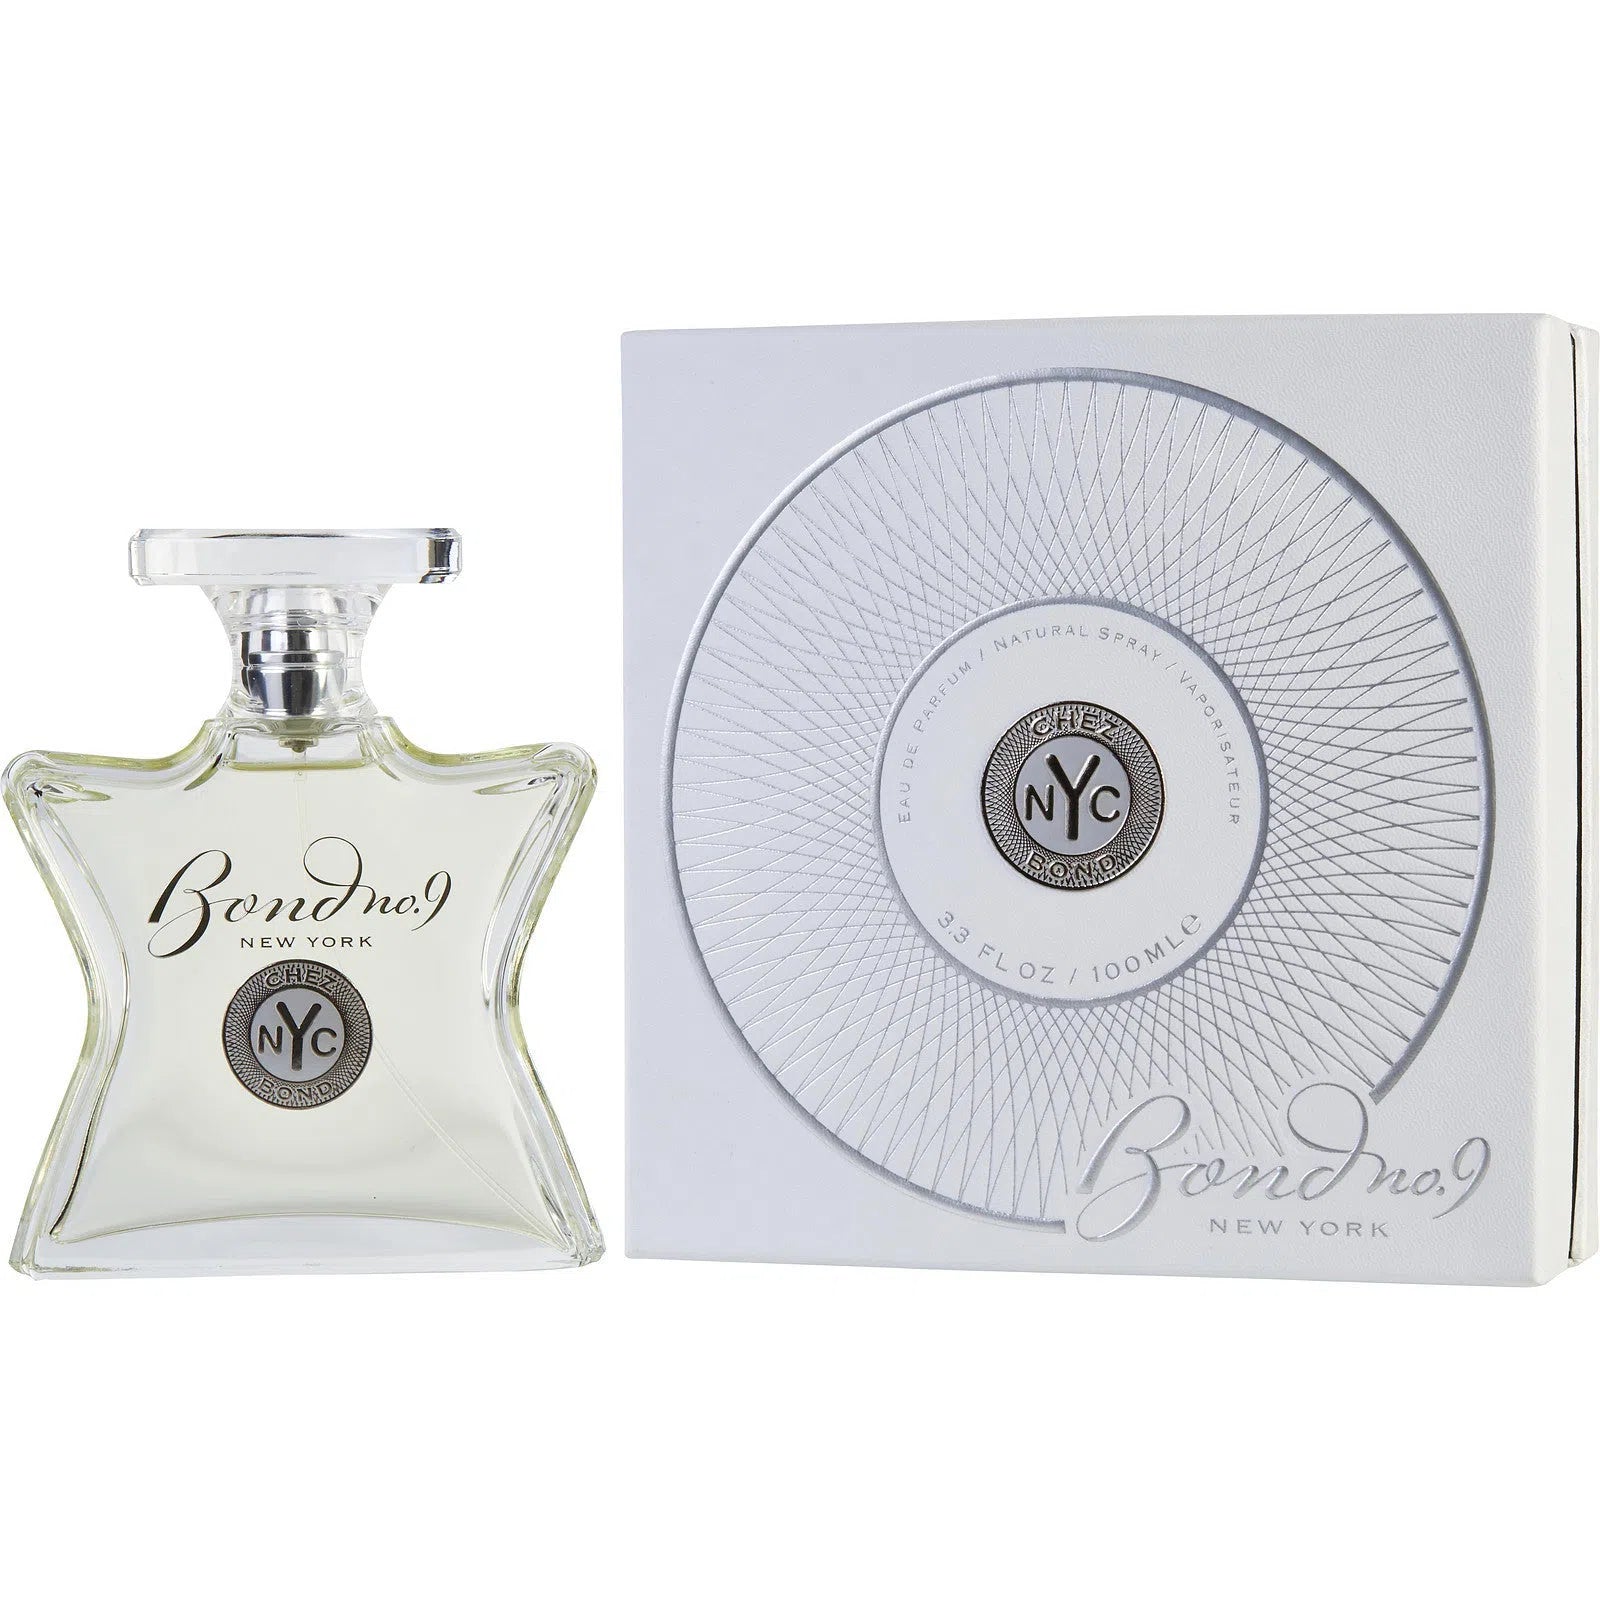 Perfume Bond No.9 Chez Bond EDP (M) / 100 ml - 888874000599- Prive Perfumes Honduras